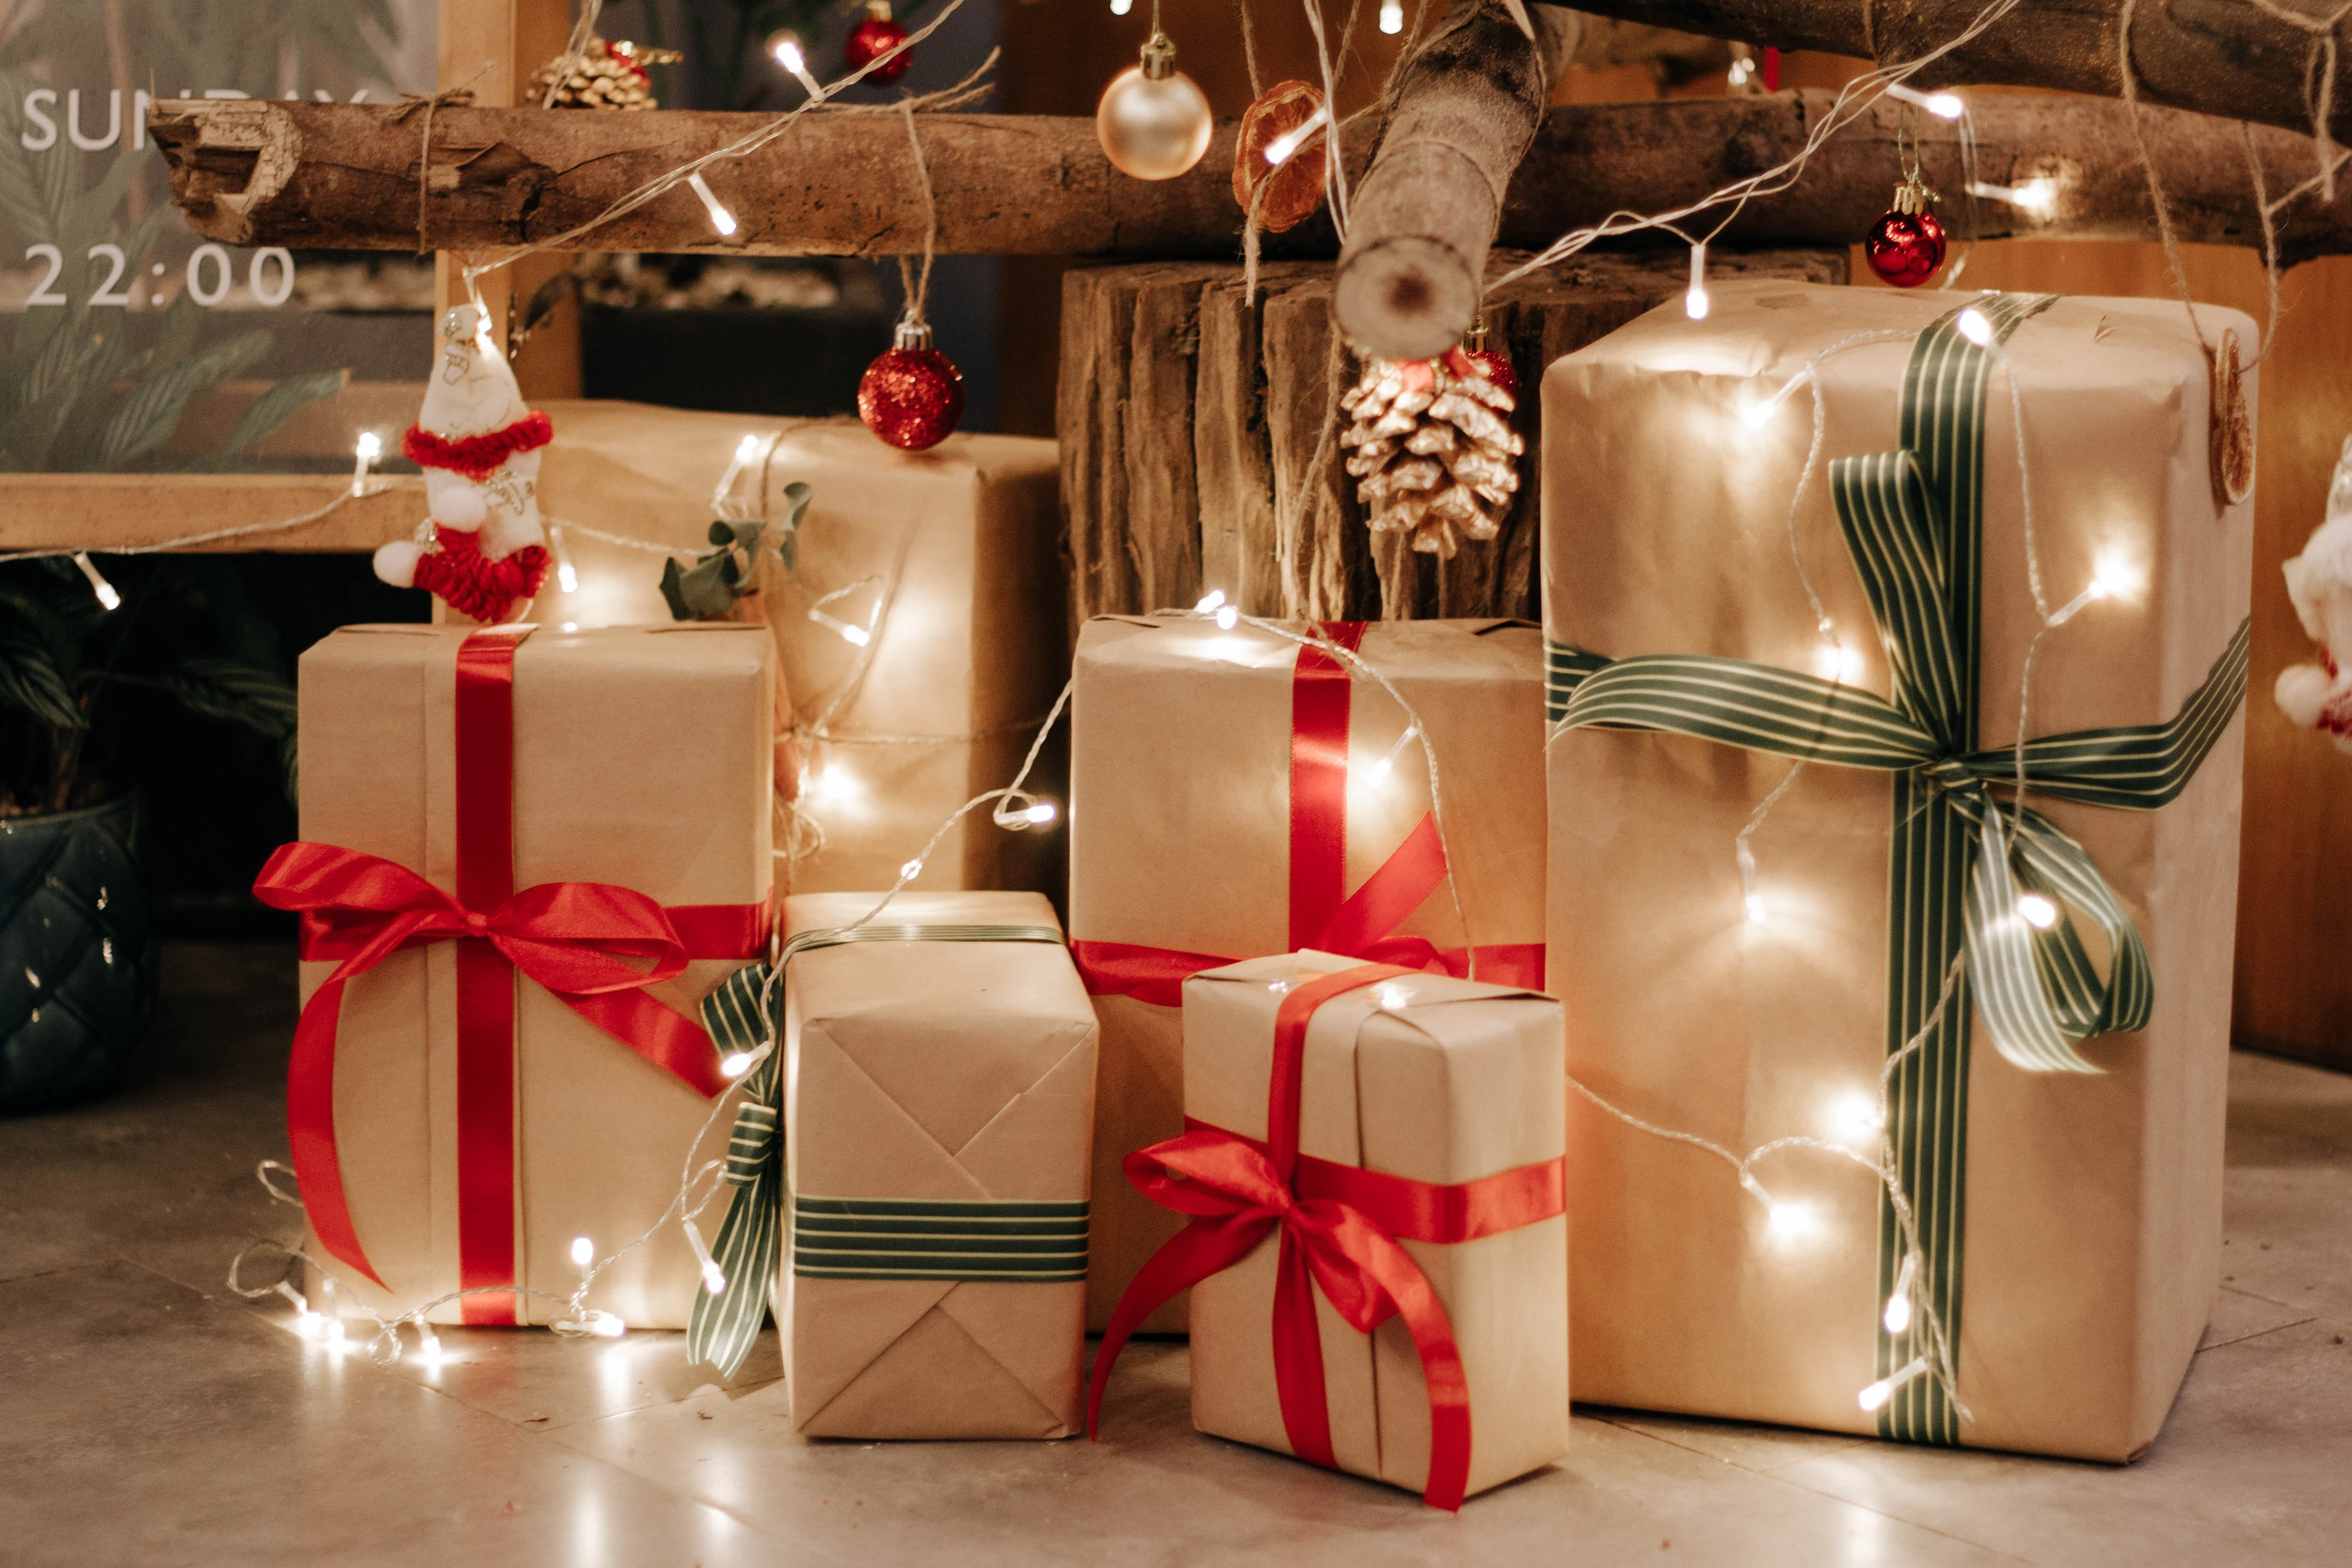 TOP 5 sprawdzonych pomysłów na świąteczne prezenty dla dzieci. Zainspiruj się tymi propozycjami